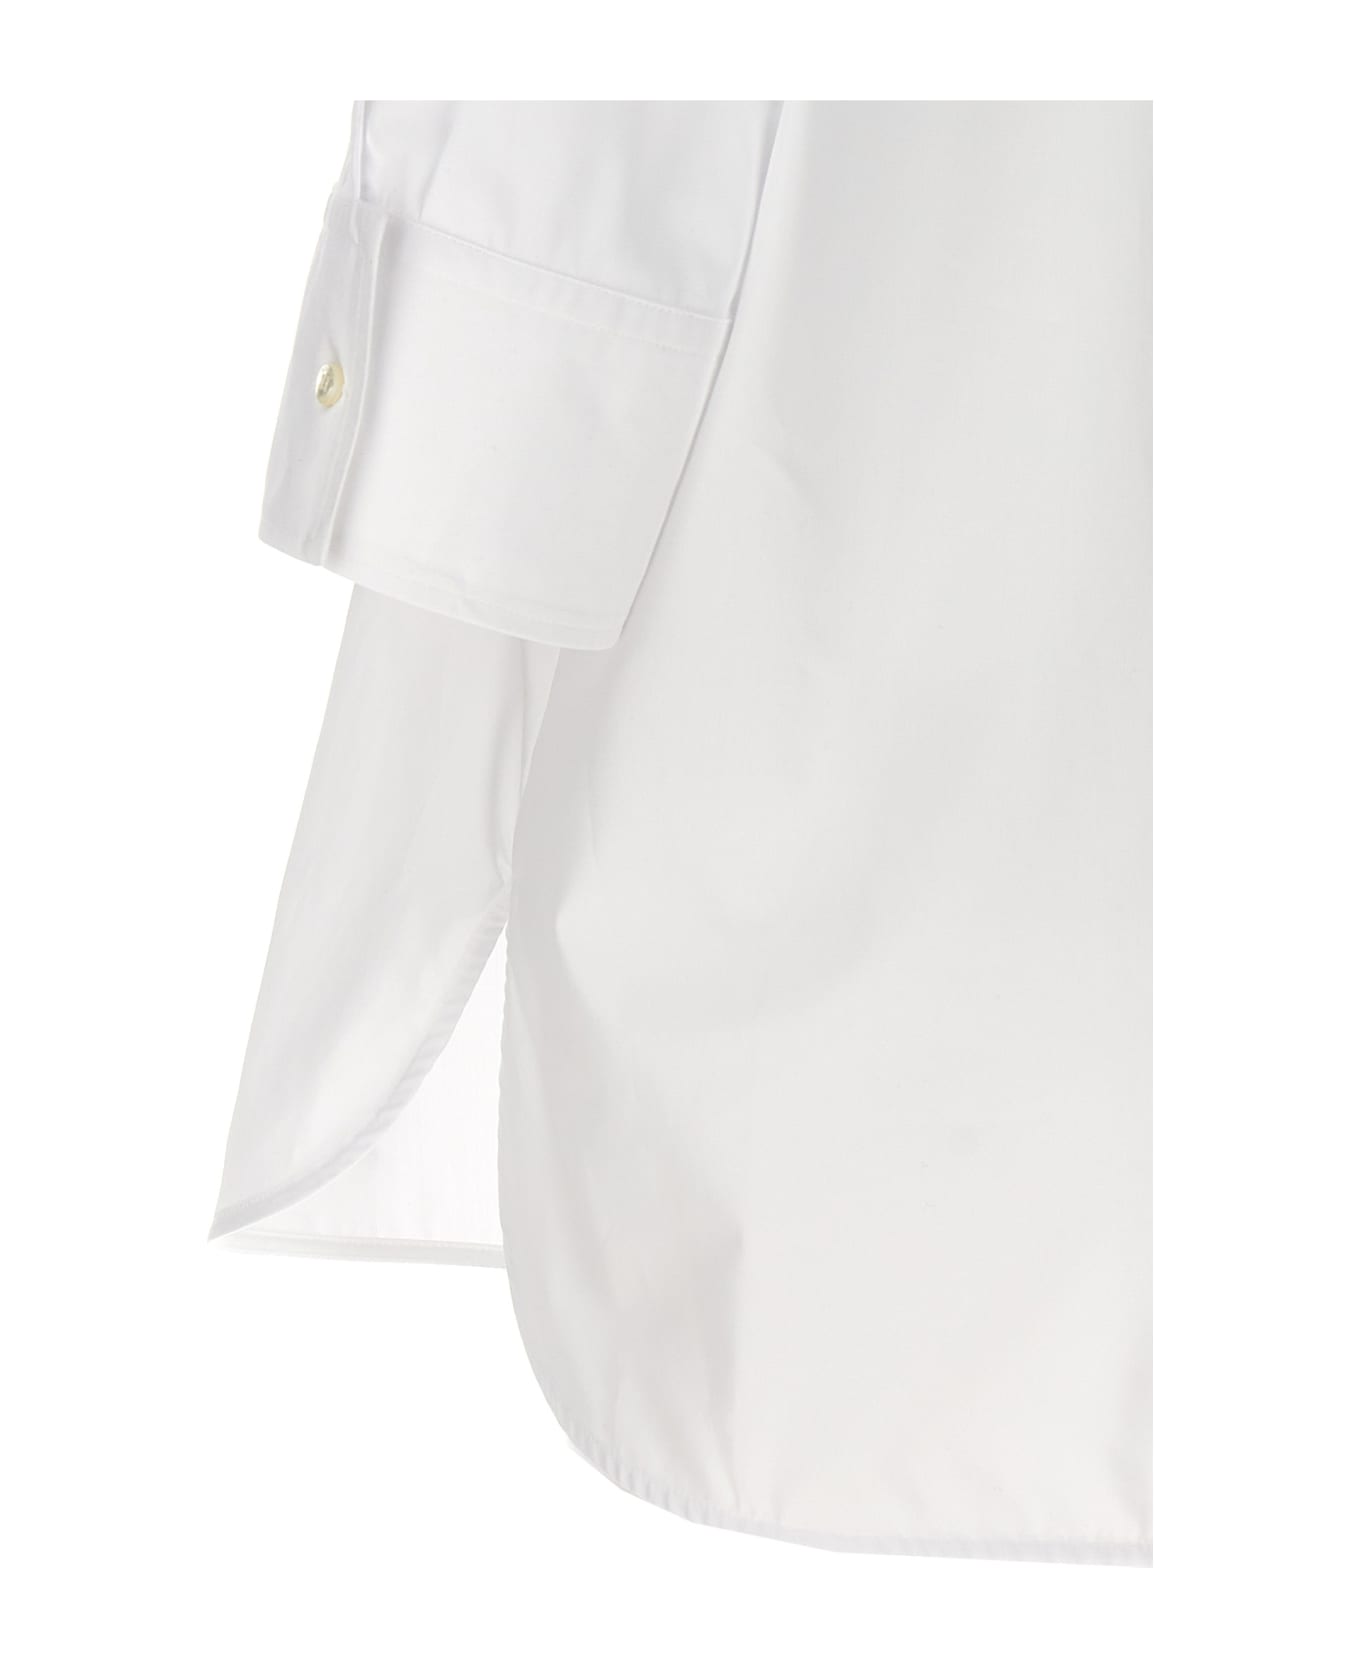 Alberto Biani Tuxedo Shirt - White